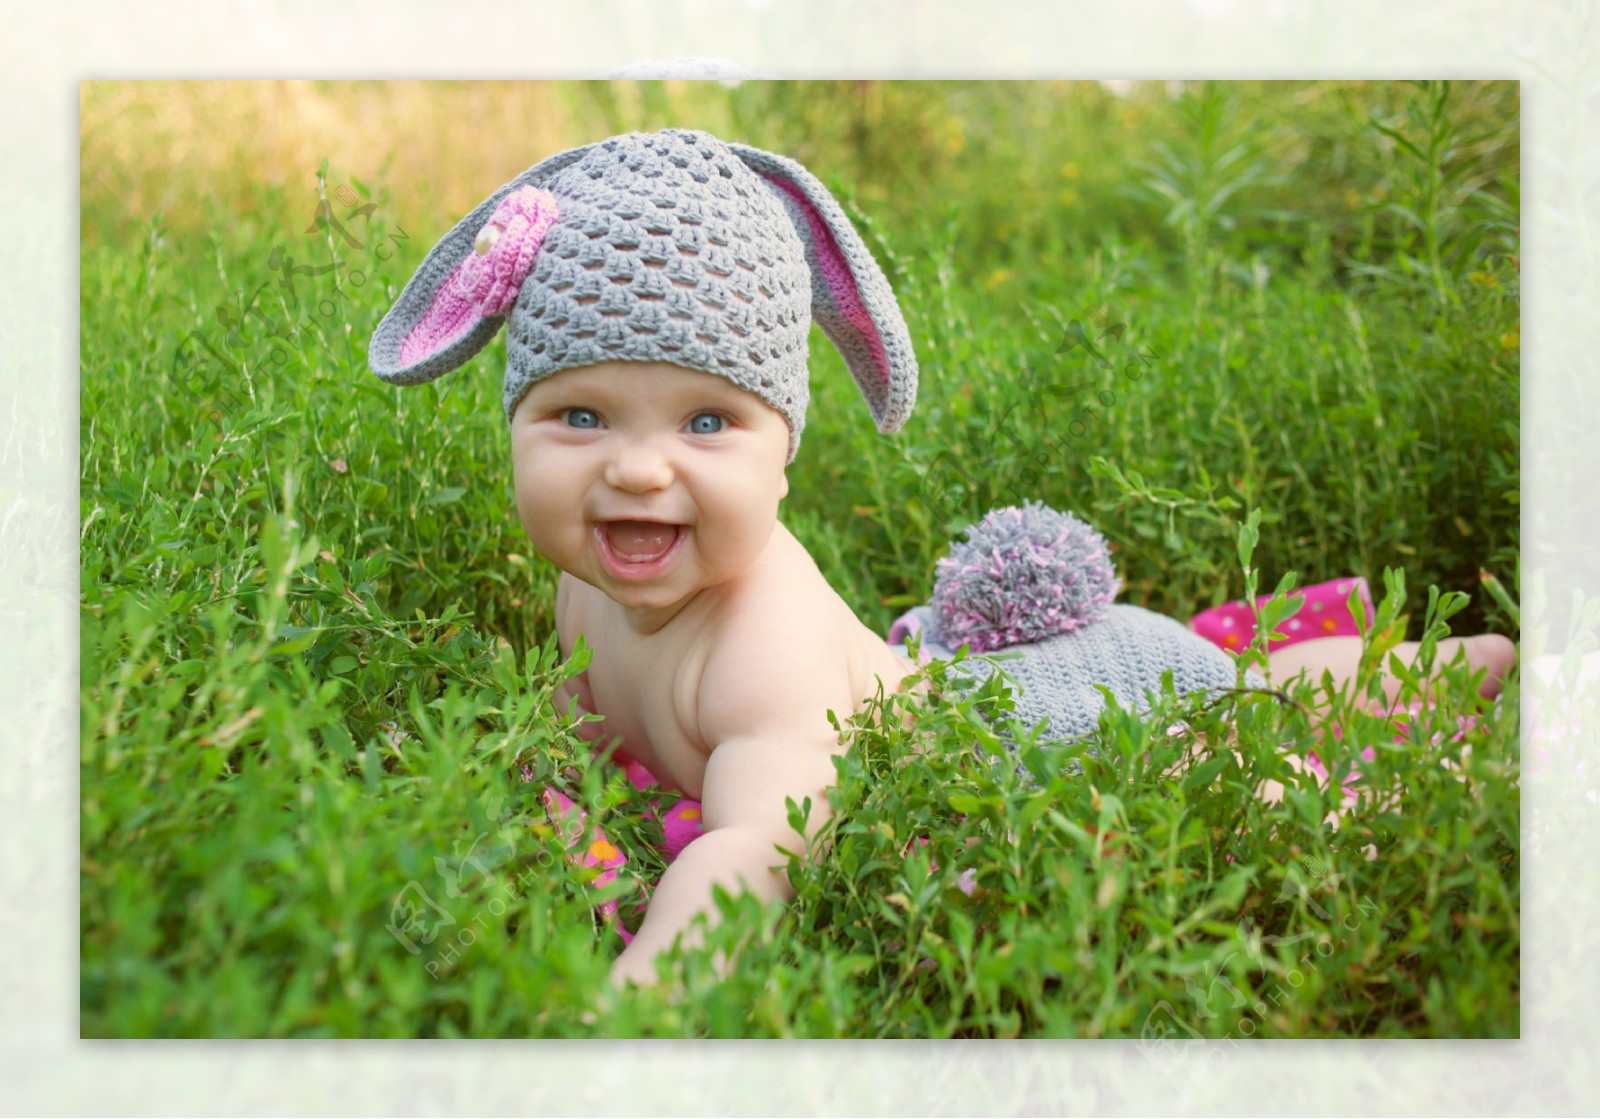 草丛里可爱的婴儿图片